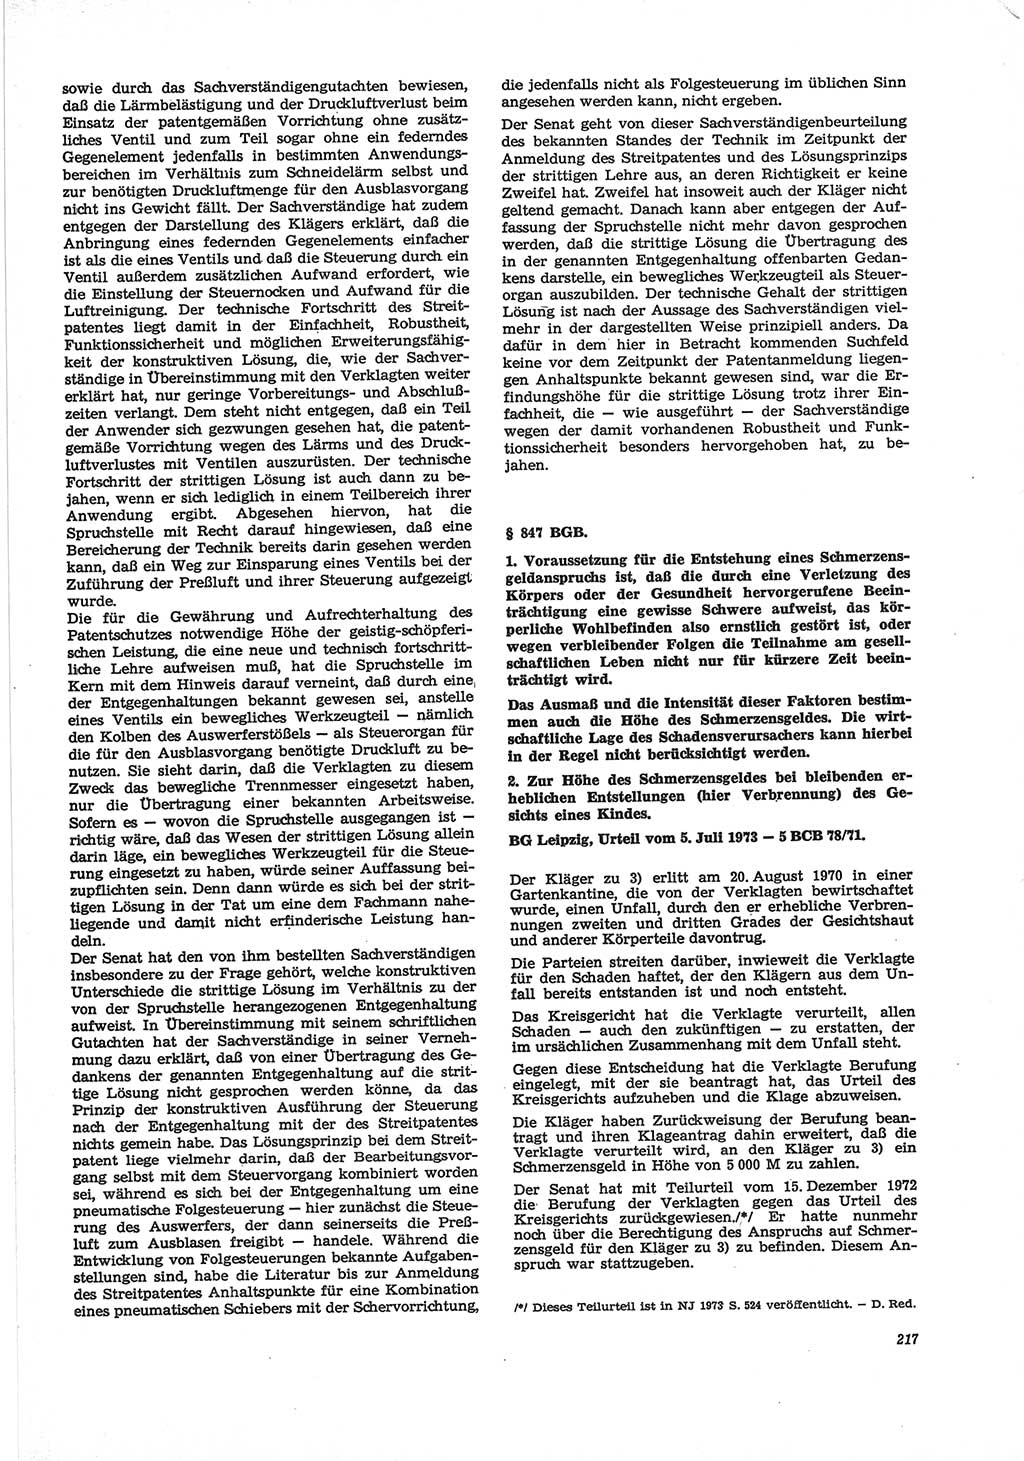 Neue Justiz (NJ), Zeitschrift für Recht und Rechtswissenschaft [Deutsche Demokratische Republik (DDR)], 28. Jahrgang 1974, Seite 217 (NJ DDR 1974, S. 217)